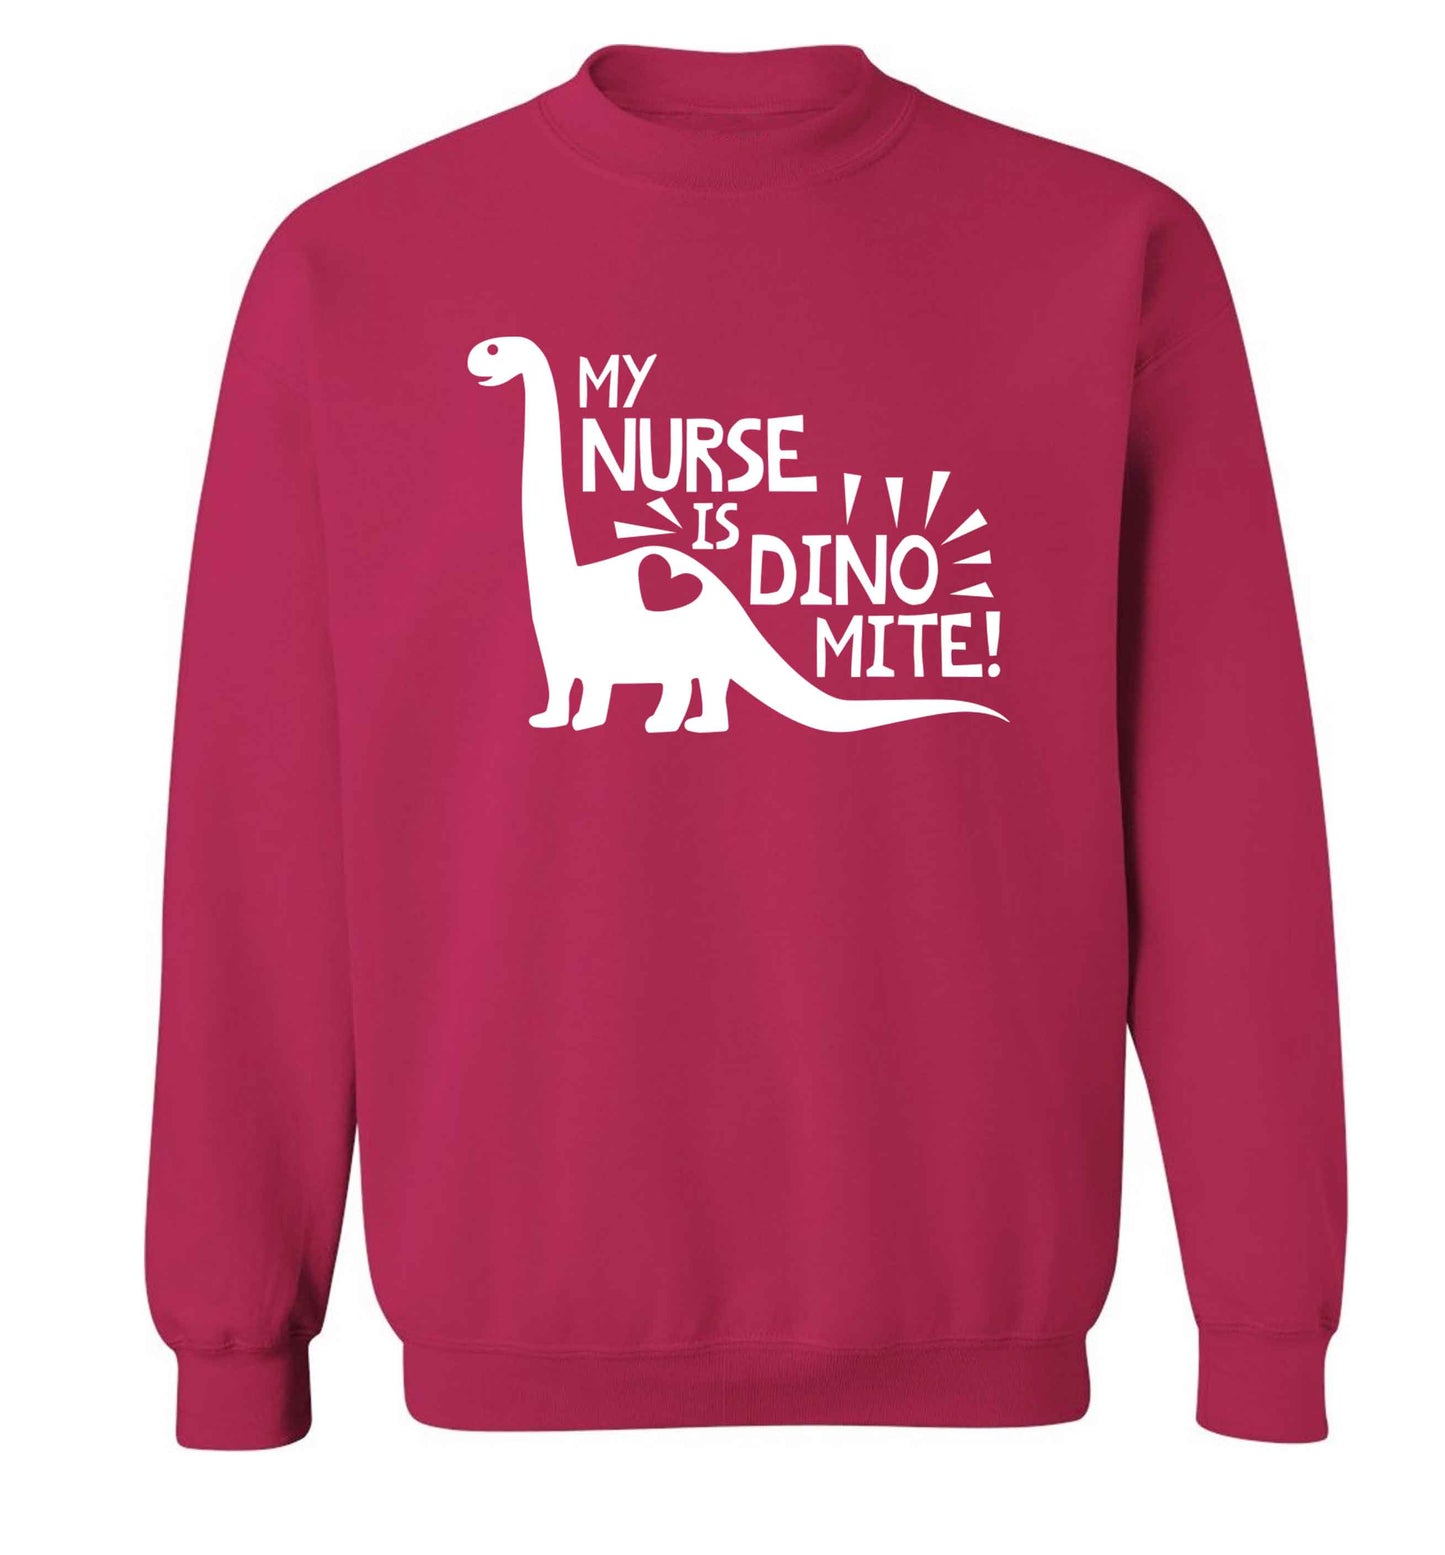 My nurse is dinomite! Adult's unisex pink Sweater 2XL